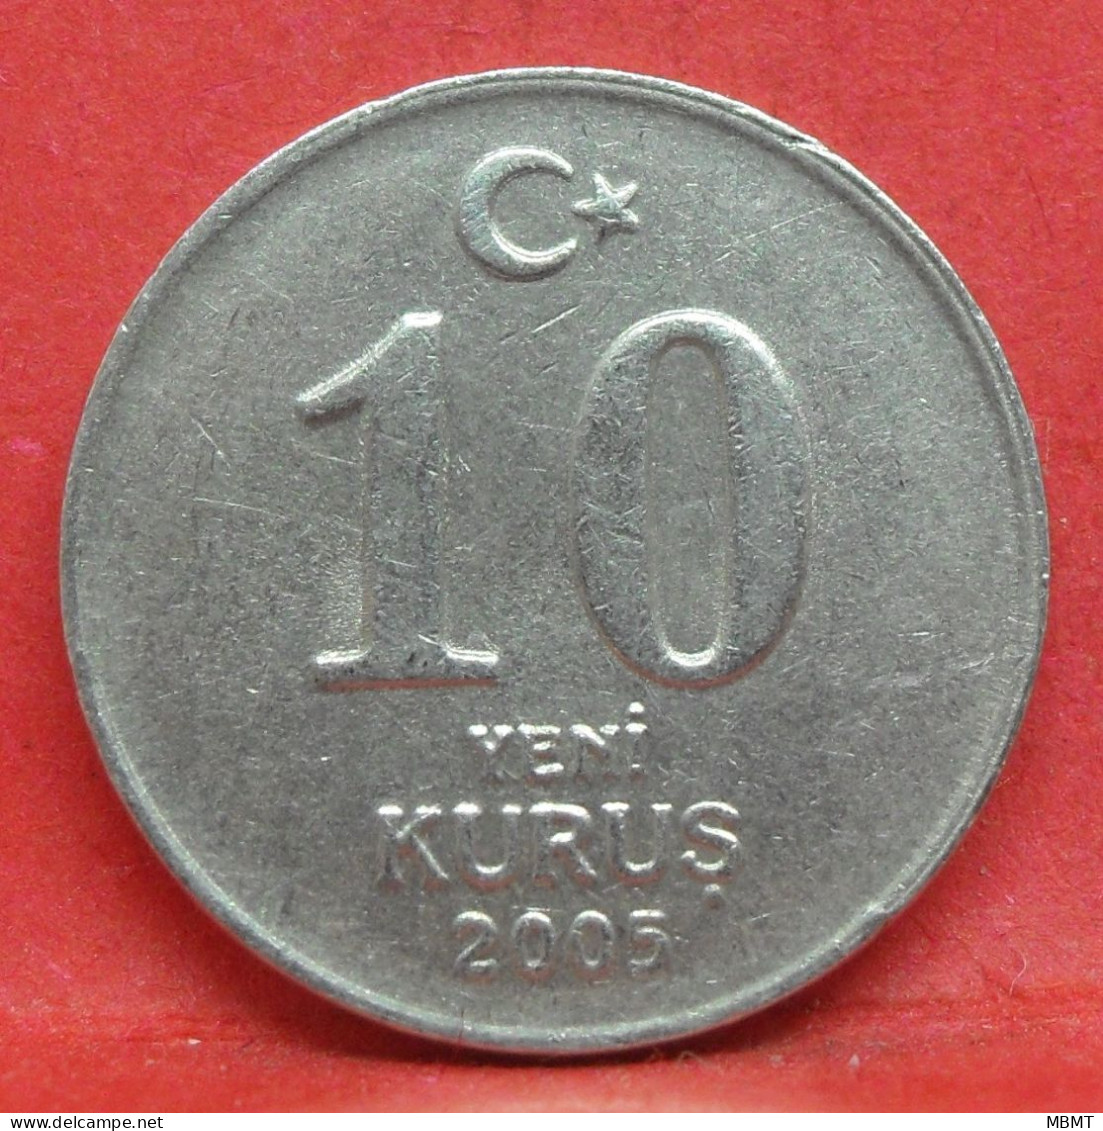 10 Kurus 2005 - TTB - Pièce De Monnaie Turquie - Article N°4982 - Turquie